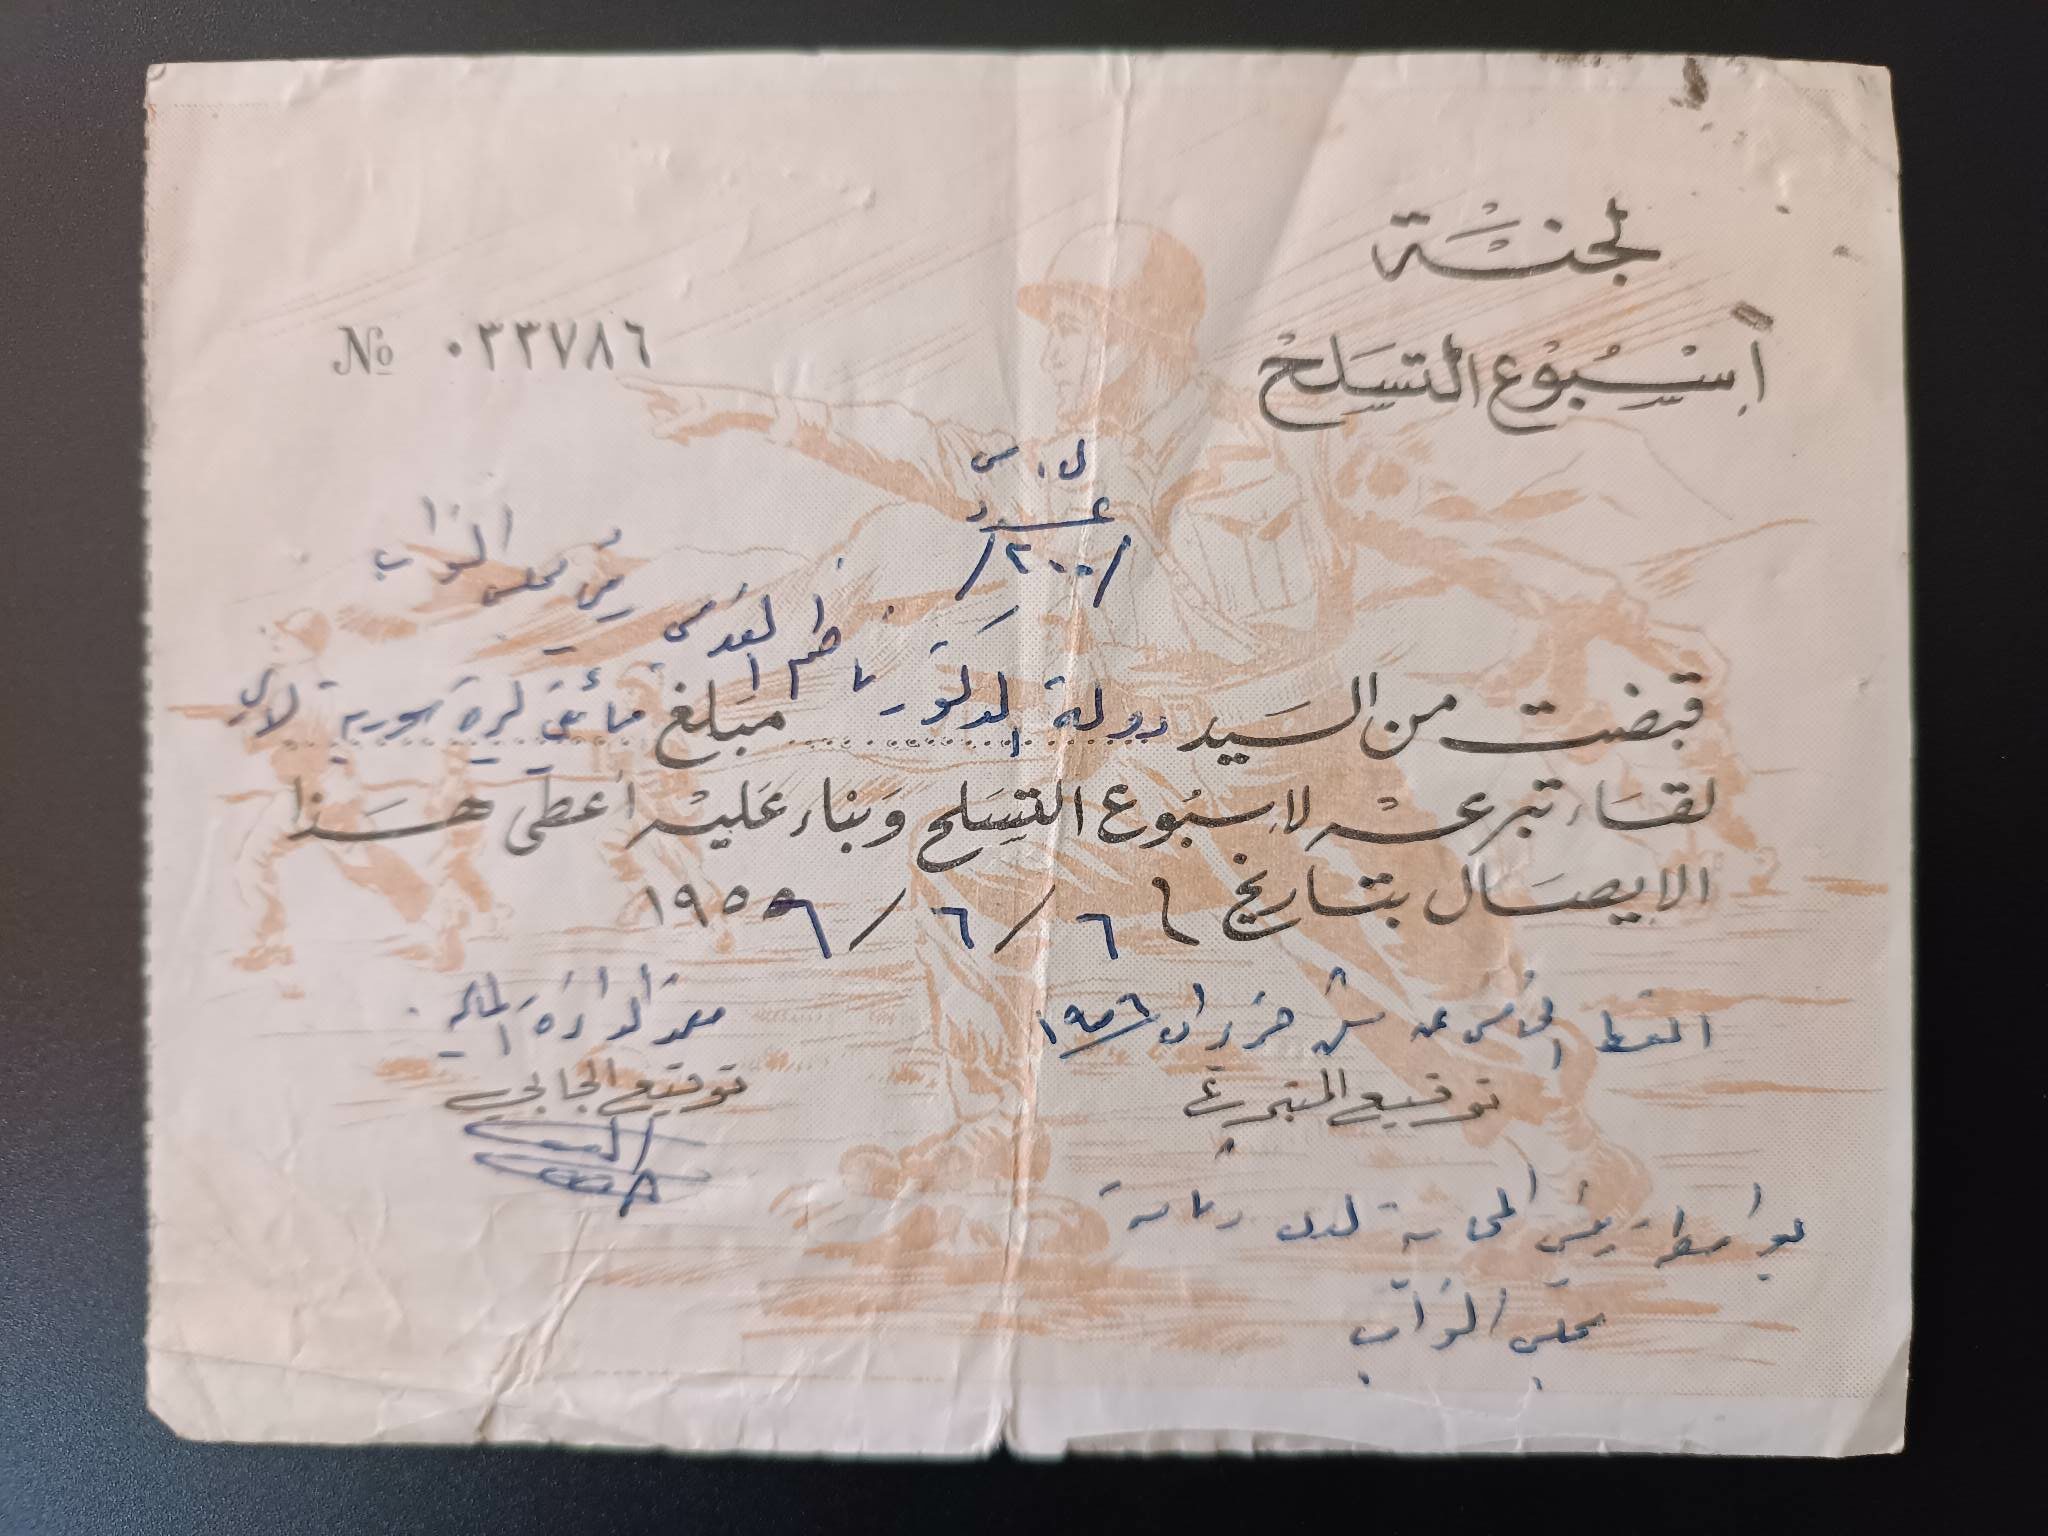 التاريخ السوري المعاصر - إيصال تبرع ناظم القدسي بمبلغ مئتي ليرة سورية في أسبوع التسلح عام 1956